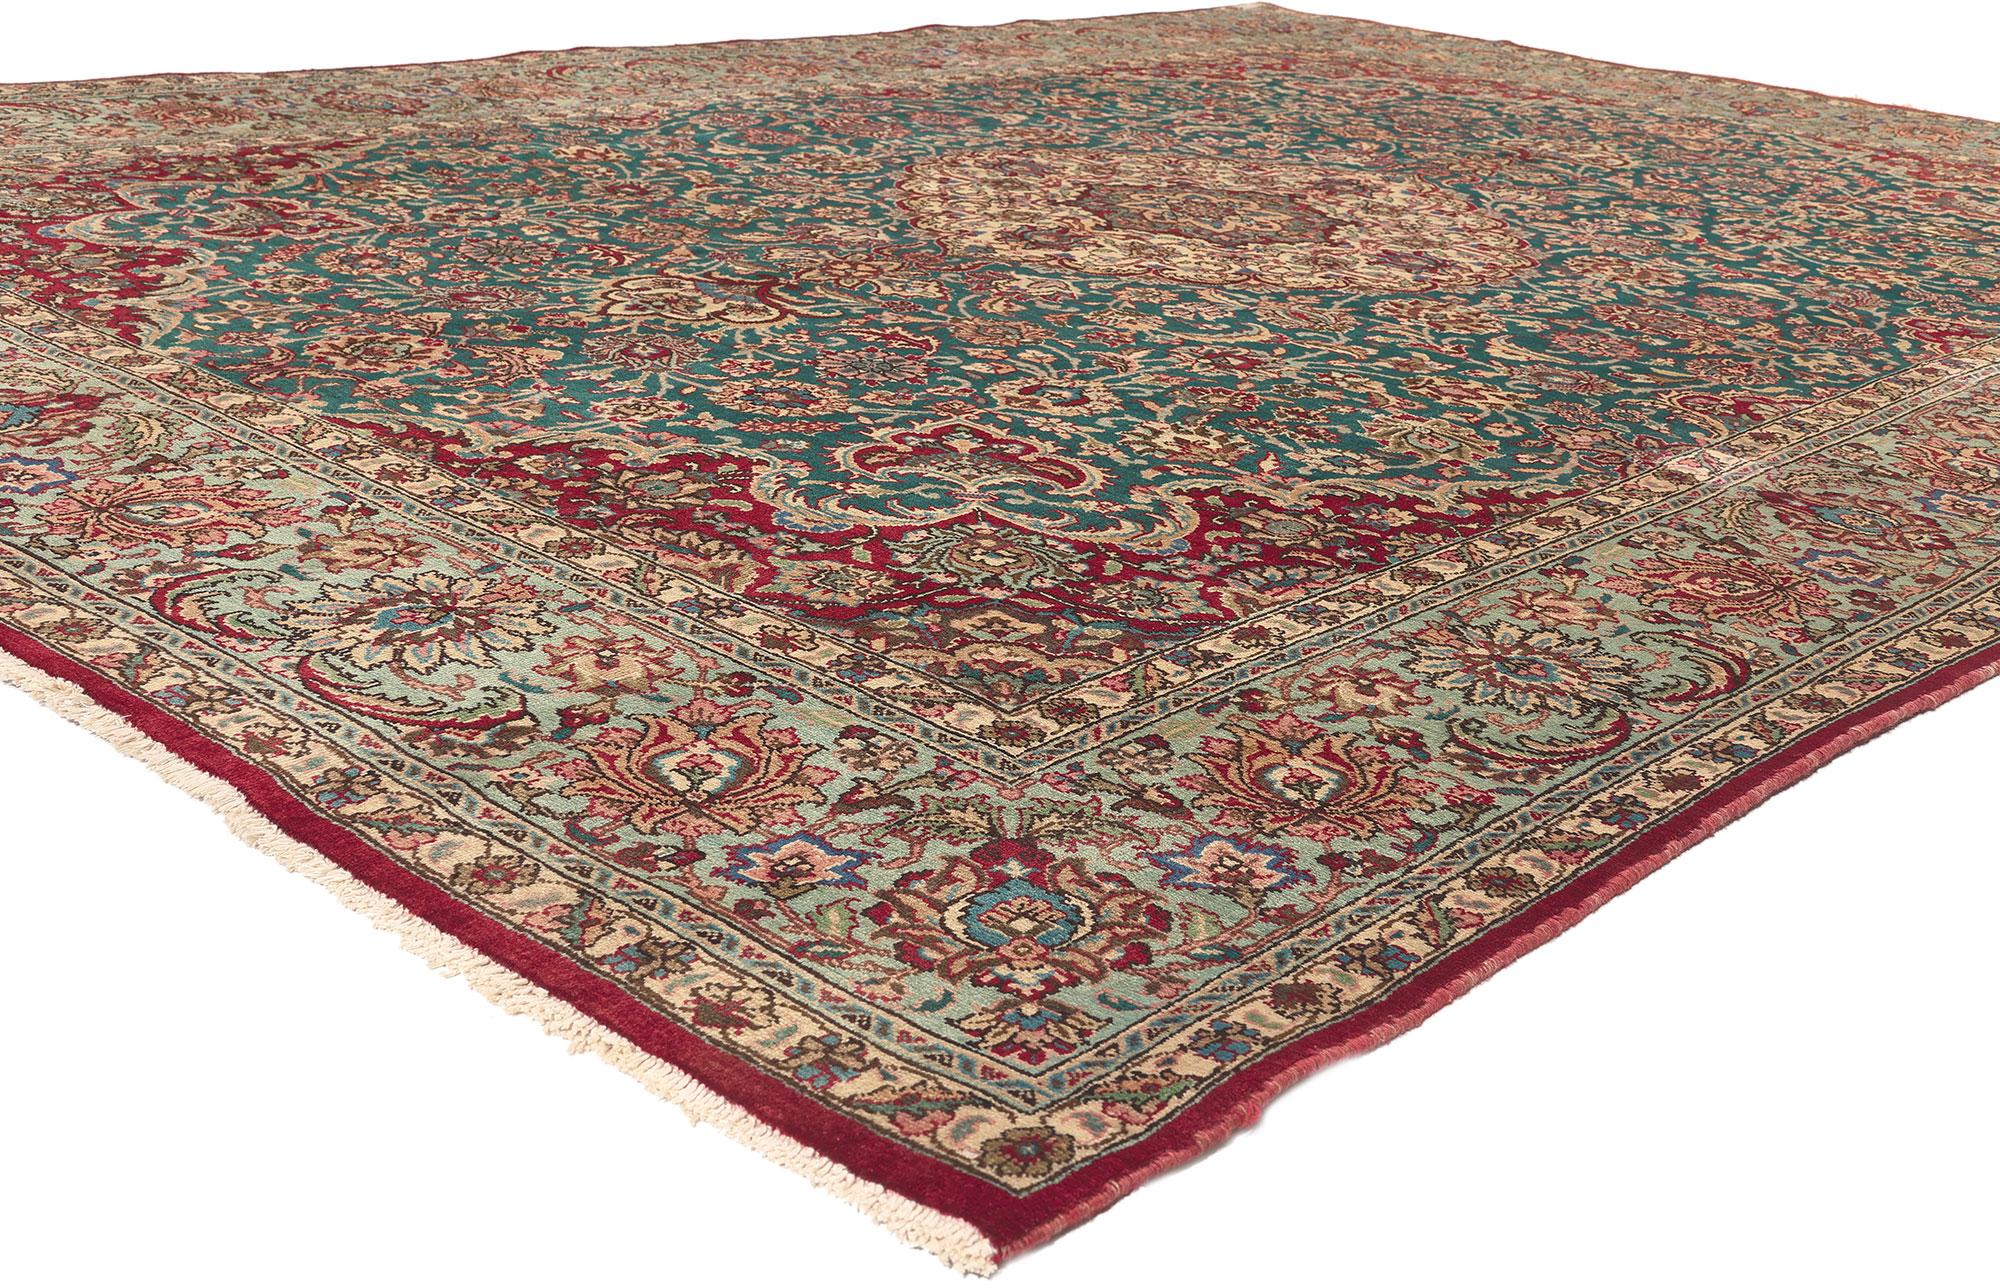 75351 Tapis persan vintage Tabriz, 08'01 x 11'06.
Le charme royal rencontre la sophistication élégante dans ce tapis Tabriz persan vintage en laine nouée à la main. Les détails botaniques décadents et la riche palette de couleurs tissée dans cette